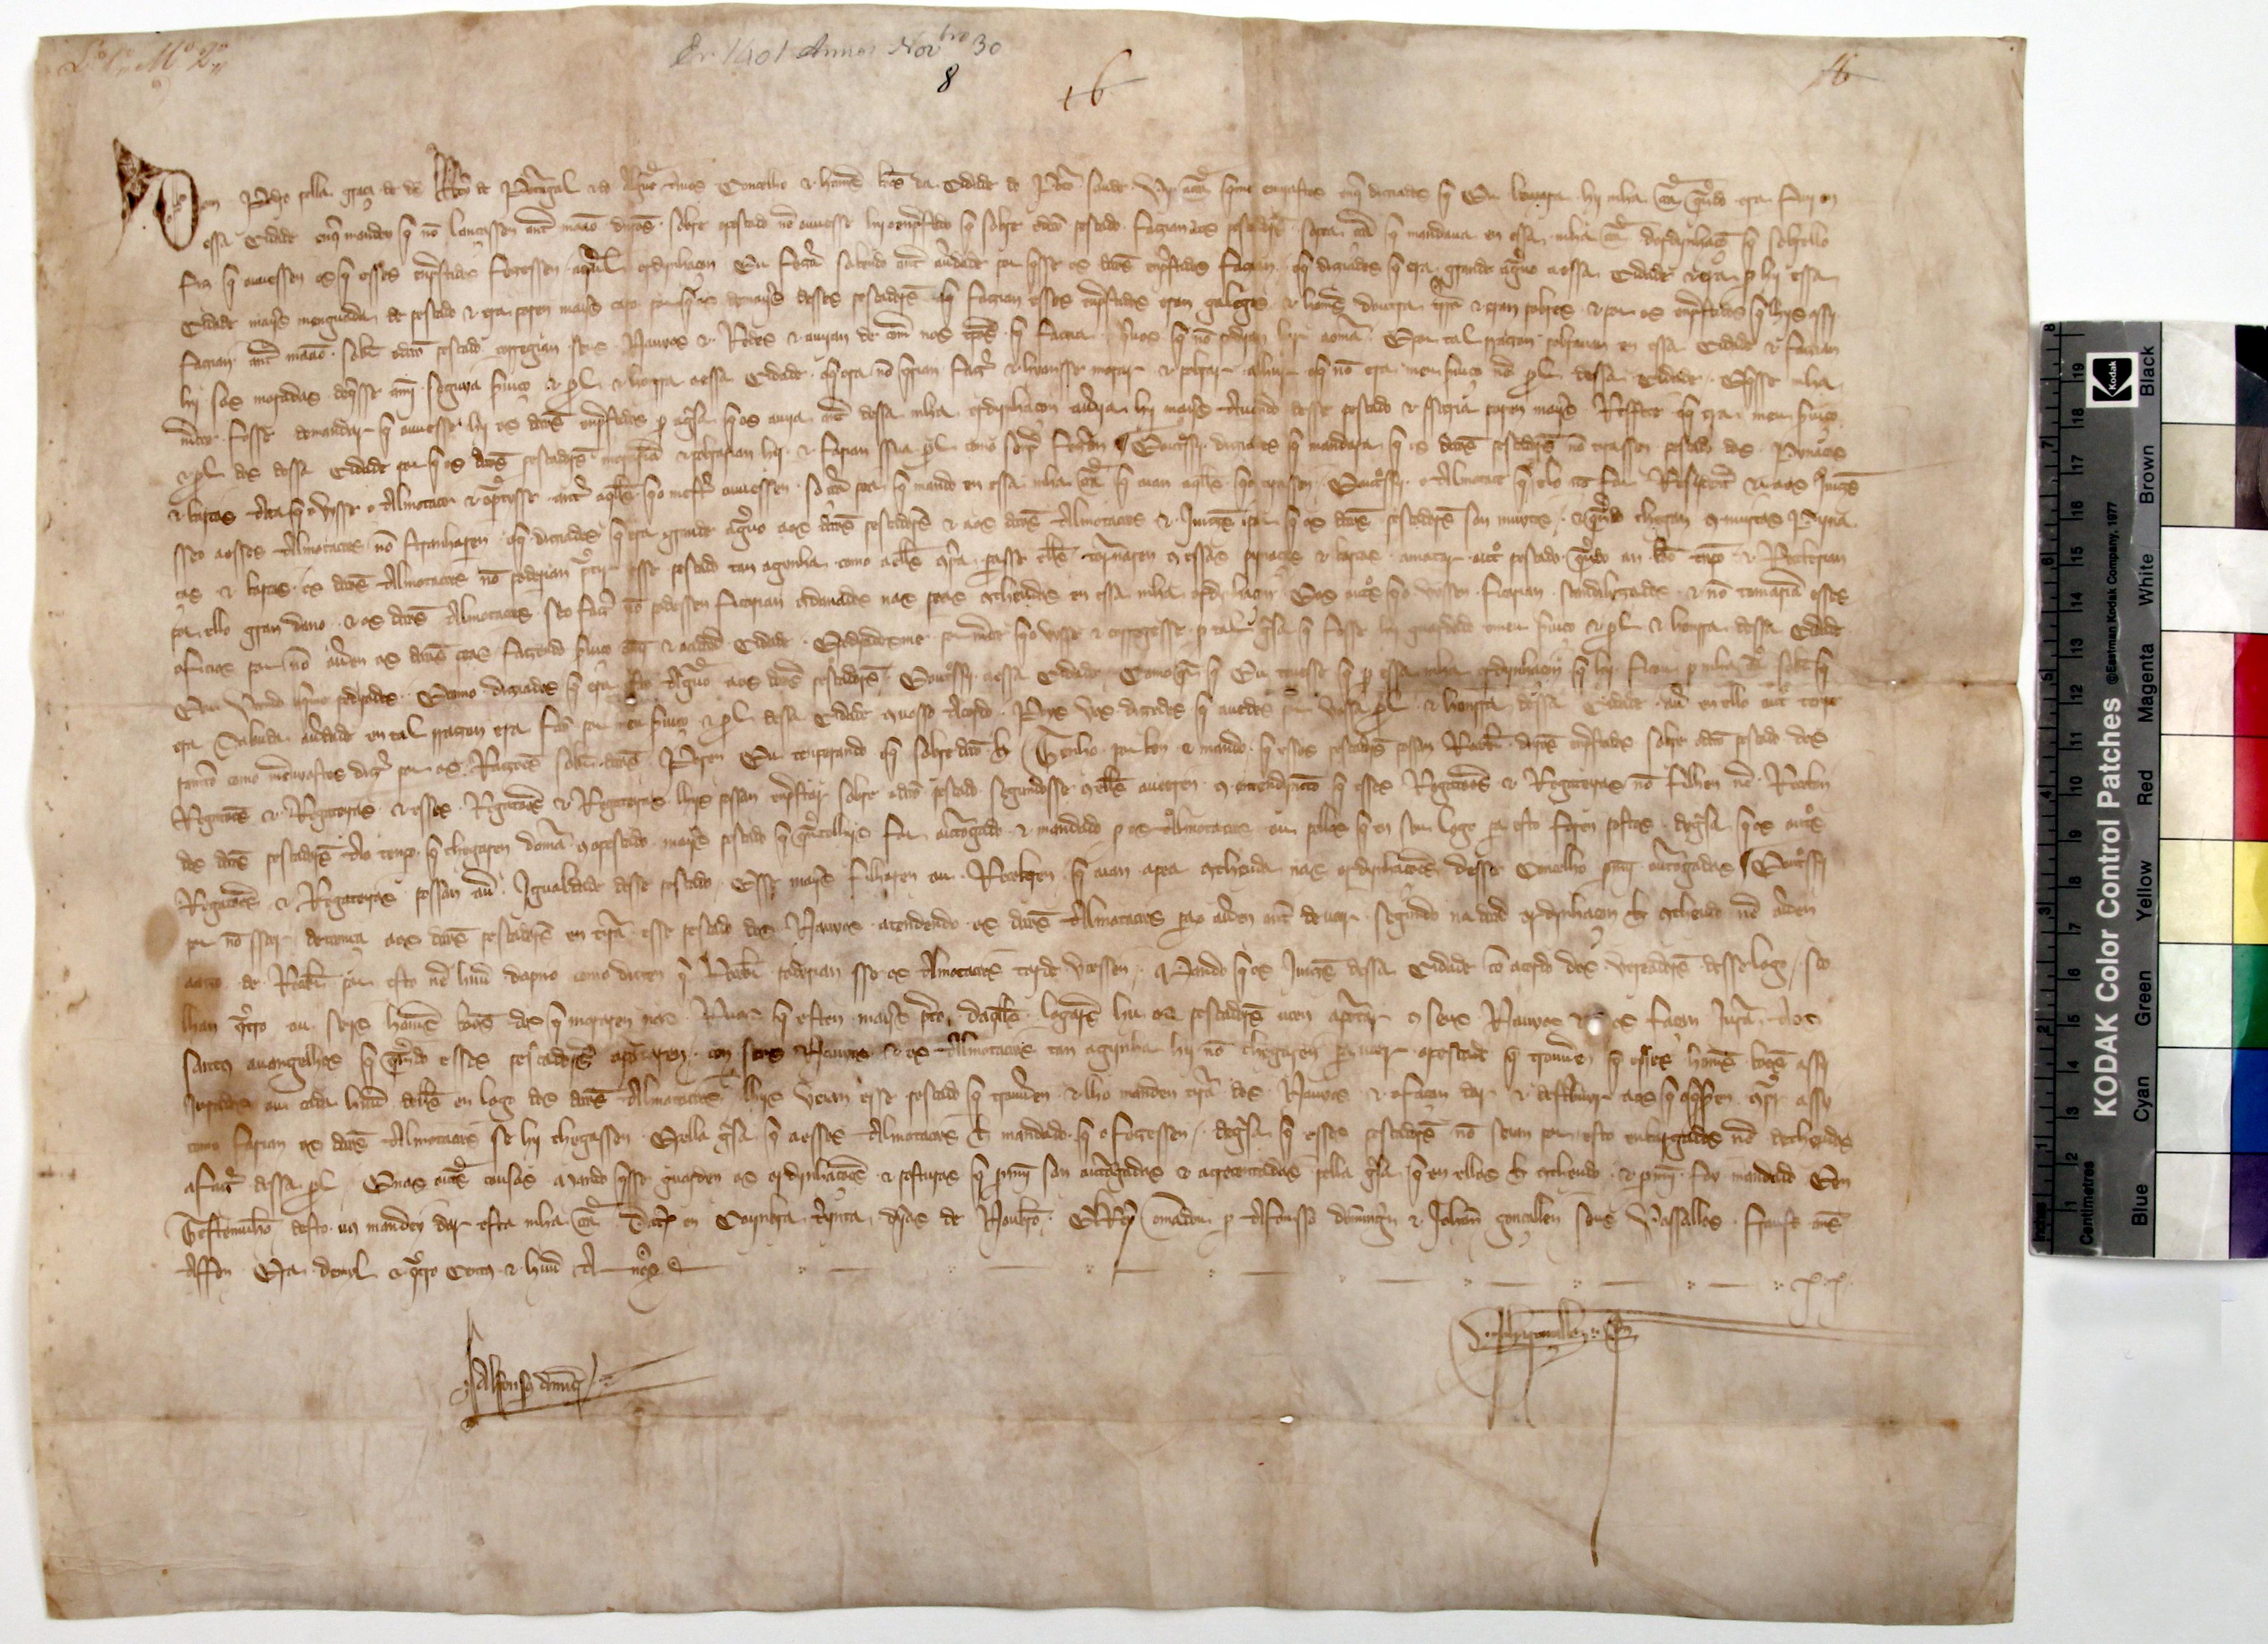 [Carta de D. Pedro I concedendo permissão ao concelho do Porto para que os pescadores recebam dos regatões dinheiro sob certas condições]